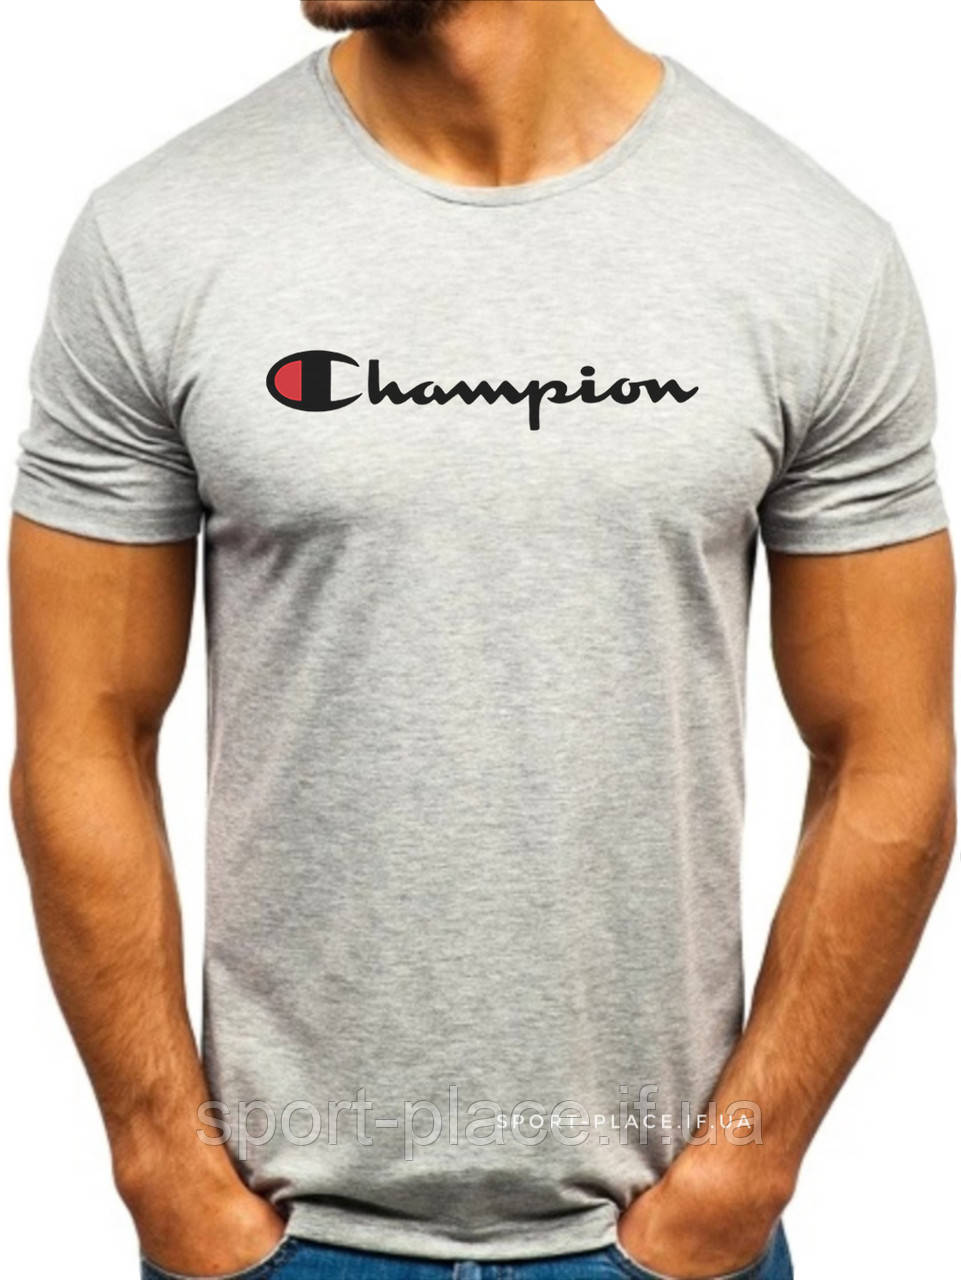 Чоловіча футболка Champion (Чемпіон) сіра (велика емблема) бавовна